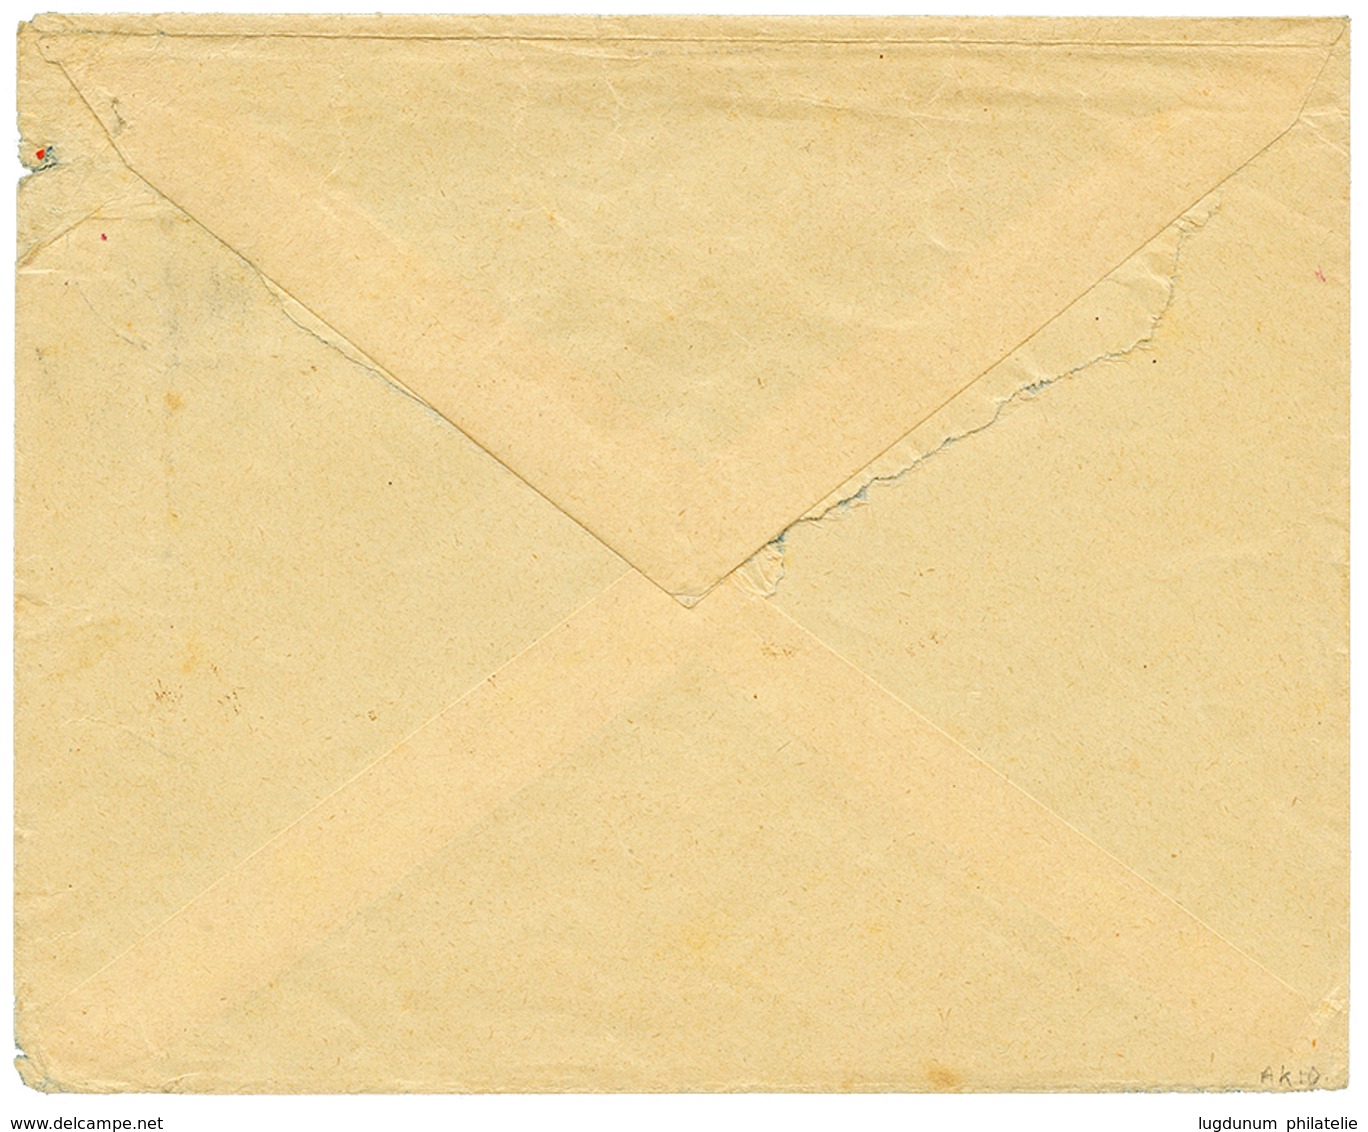 1910 4h(x2) Canc. TAVETA DEUTSCHE FELDPOST + Red Cachet ZENZUR PASSIERT DEUTSCH OSTAFRIKA On Envelope To BERLIN. Vf. - German East Africa